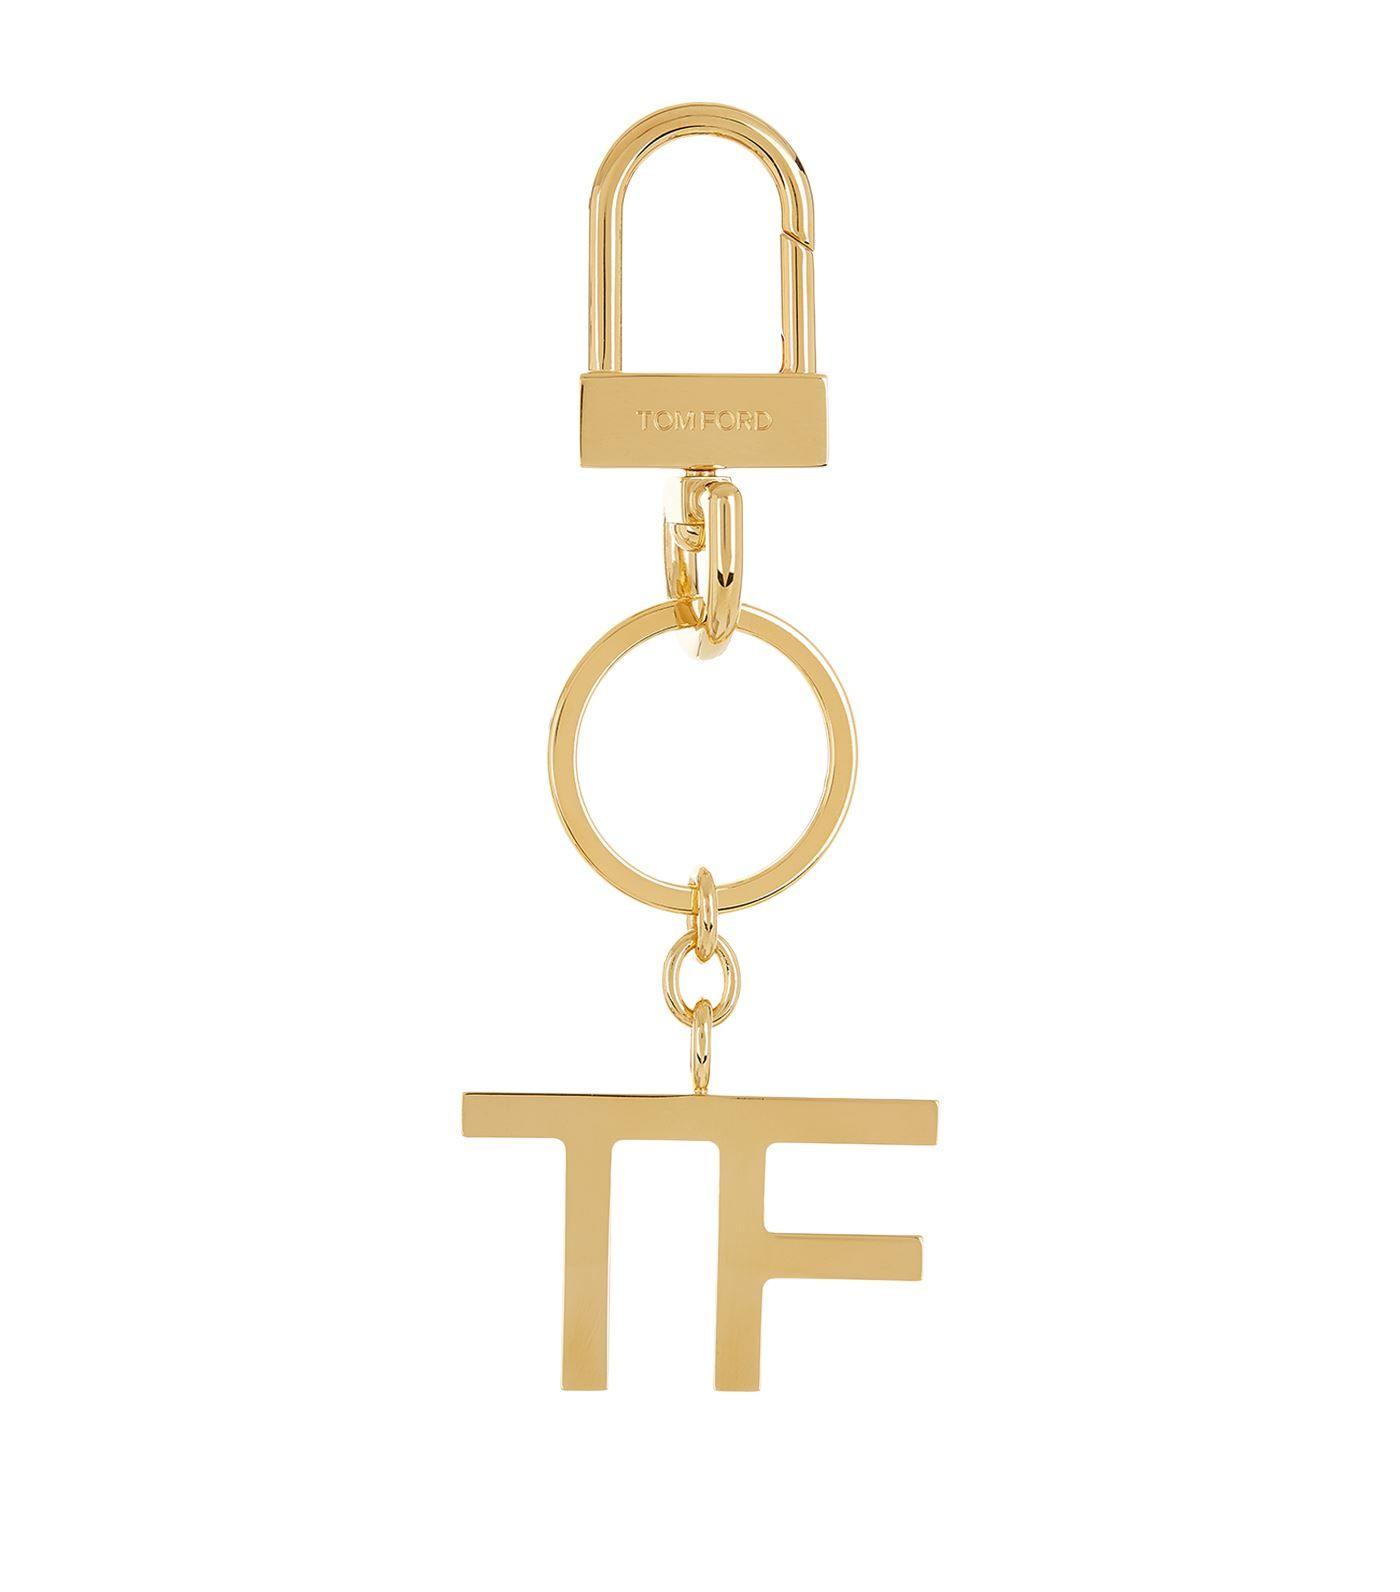 Tom Ford Logo - Tom Ford Logo Keyring In Gold